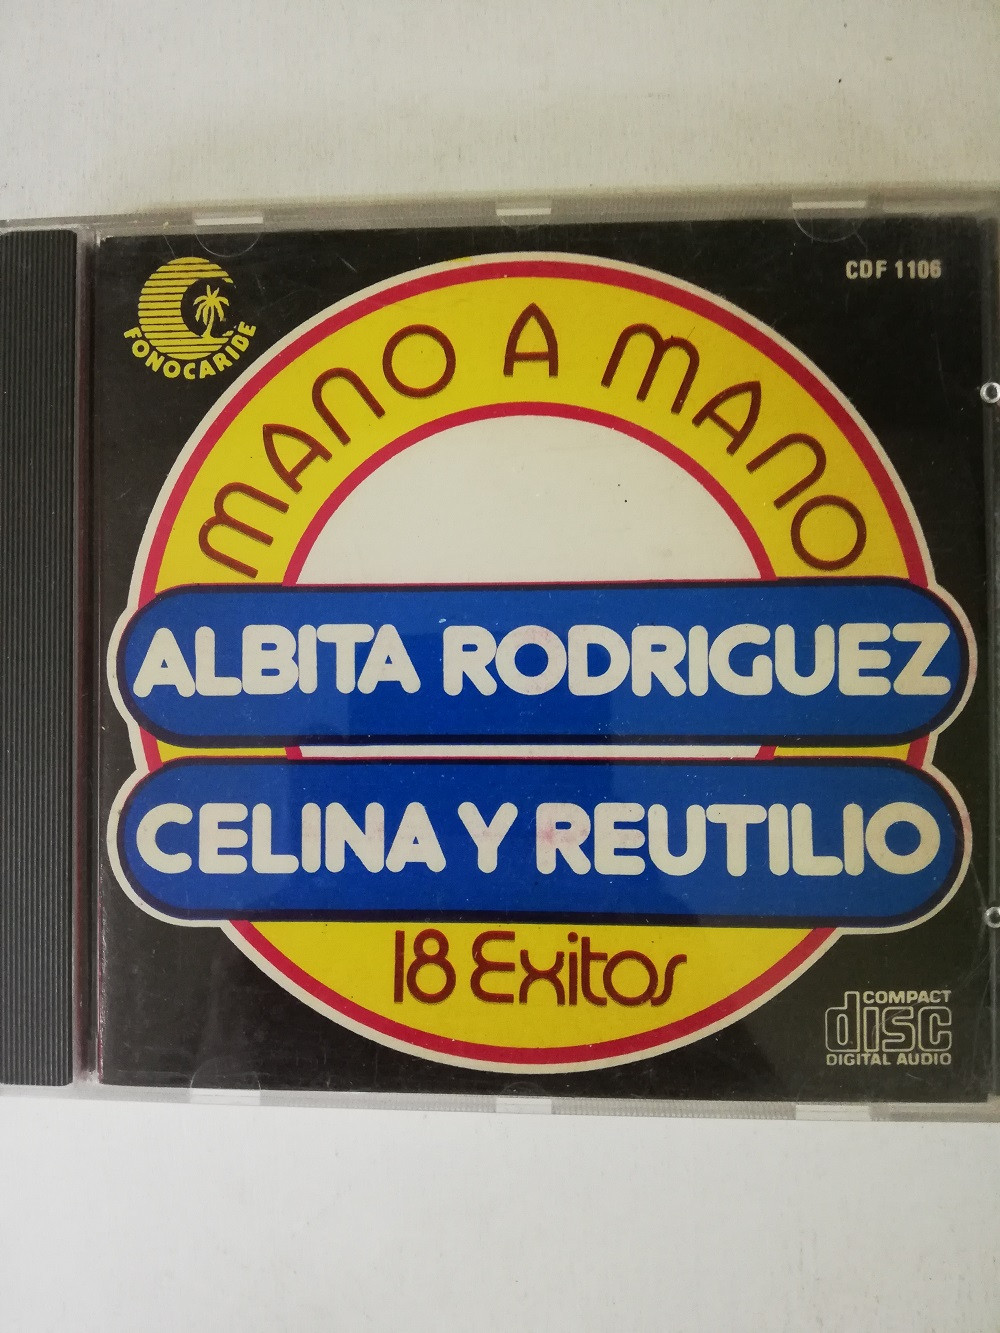 Imagen CD ALBITA RODRIGUEZ/CELINA Y REUTILIO - MANO A MANO, 18 EXITOS 1